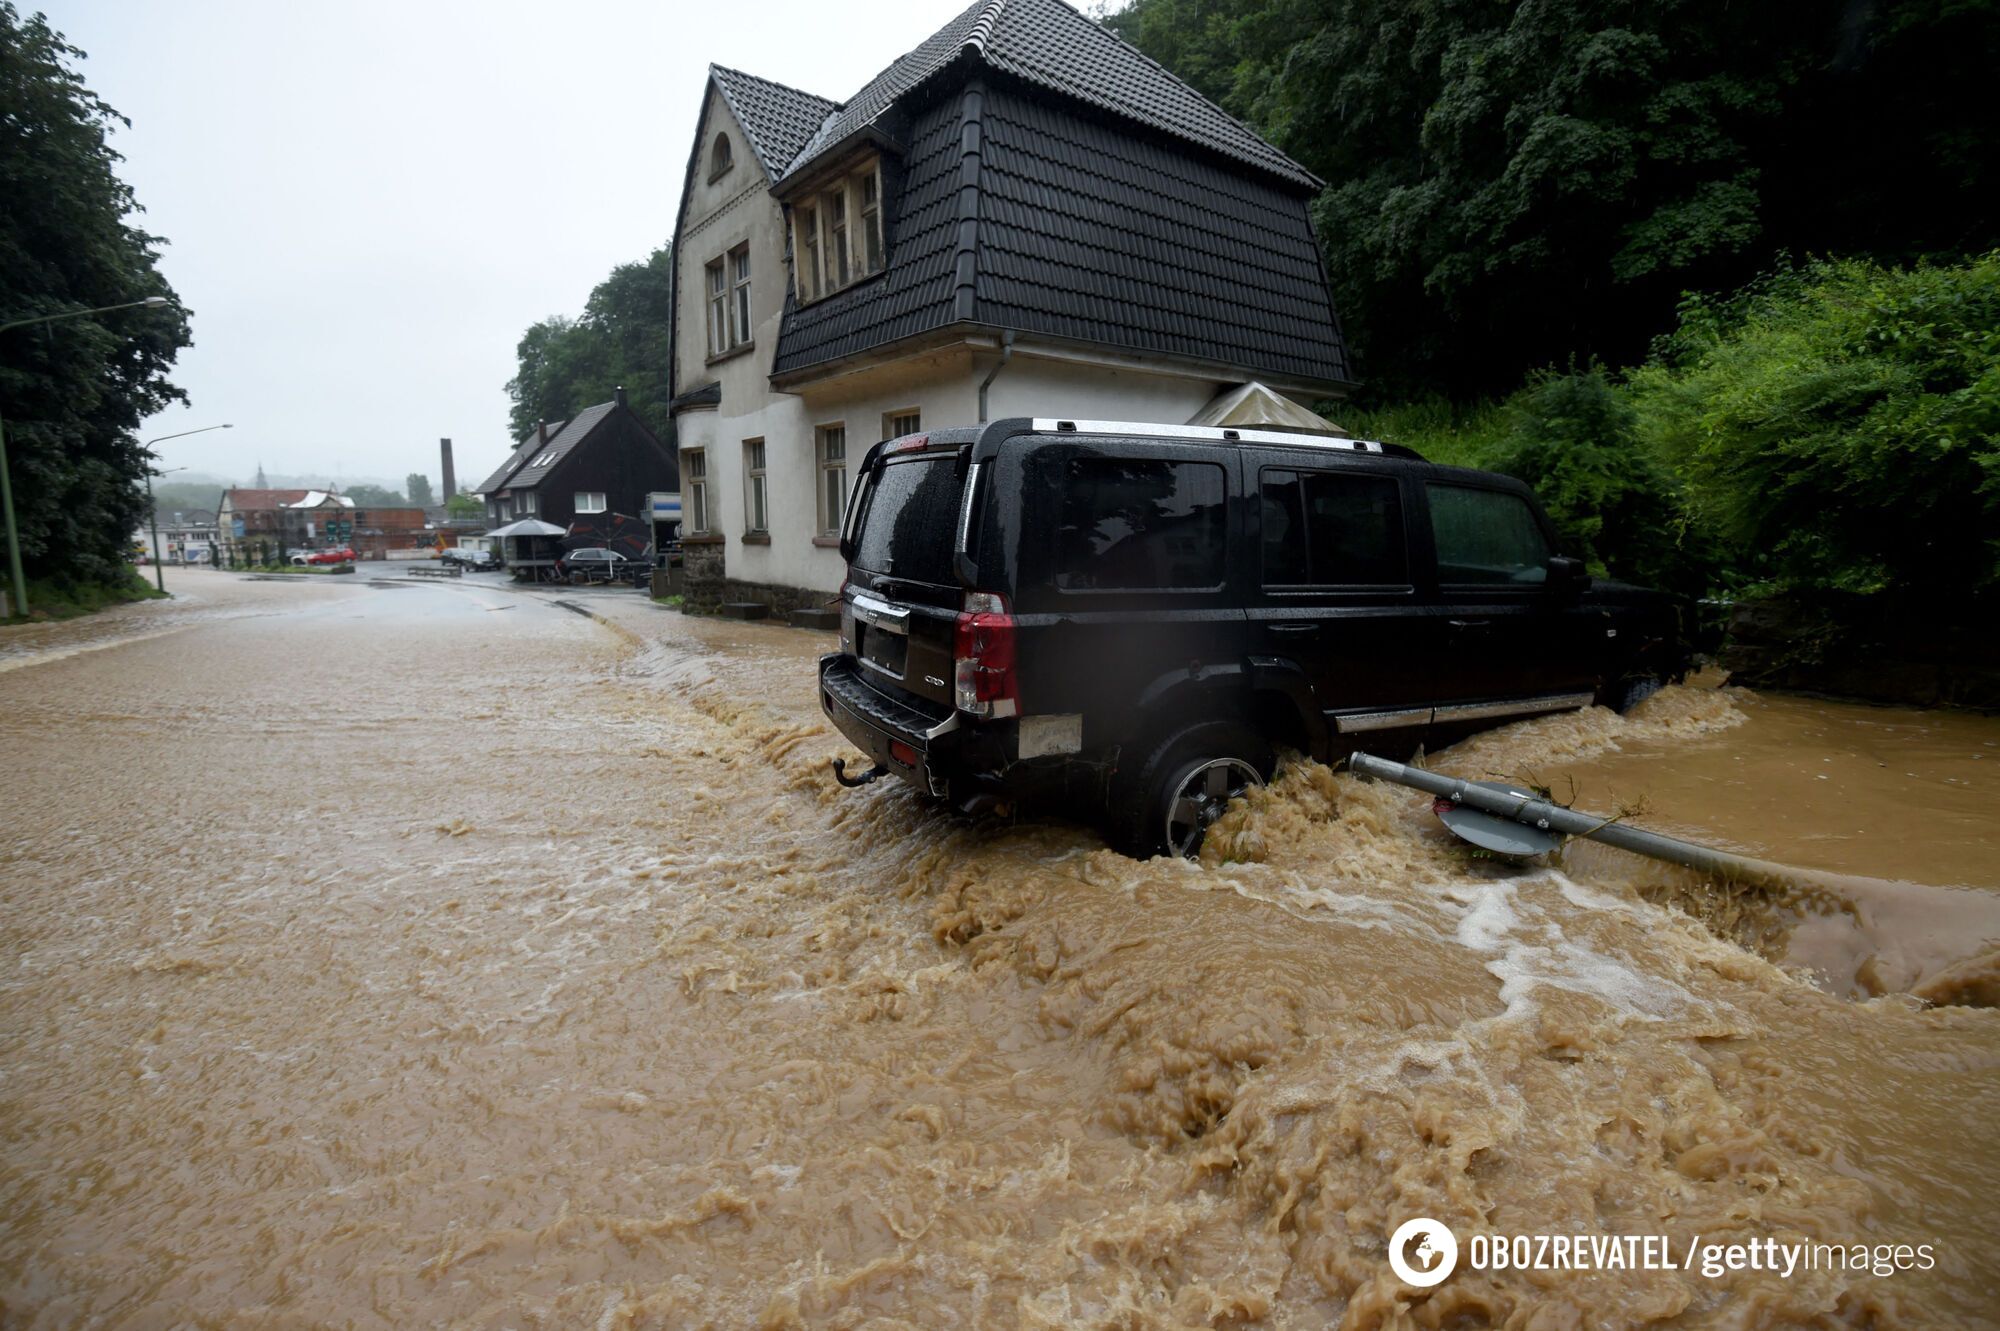 В Германии после масштабного наводнения погибли люди, много пропало без вести. Фото и видео